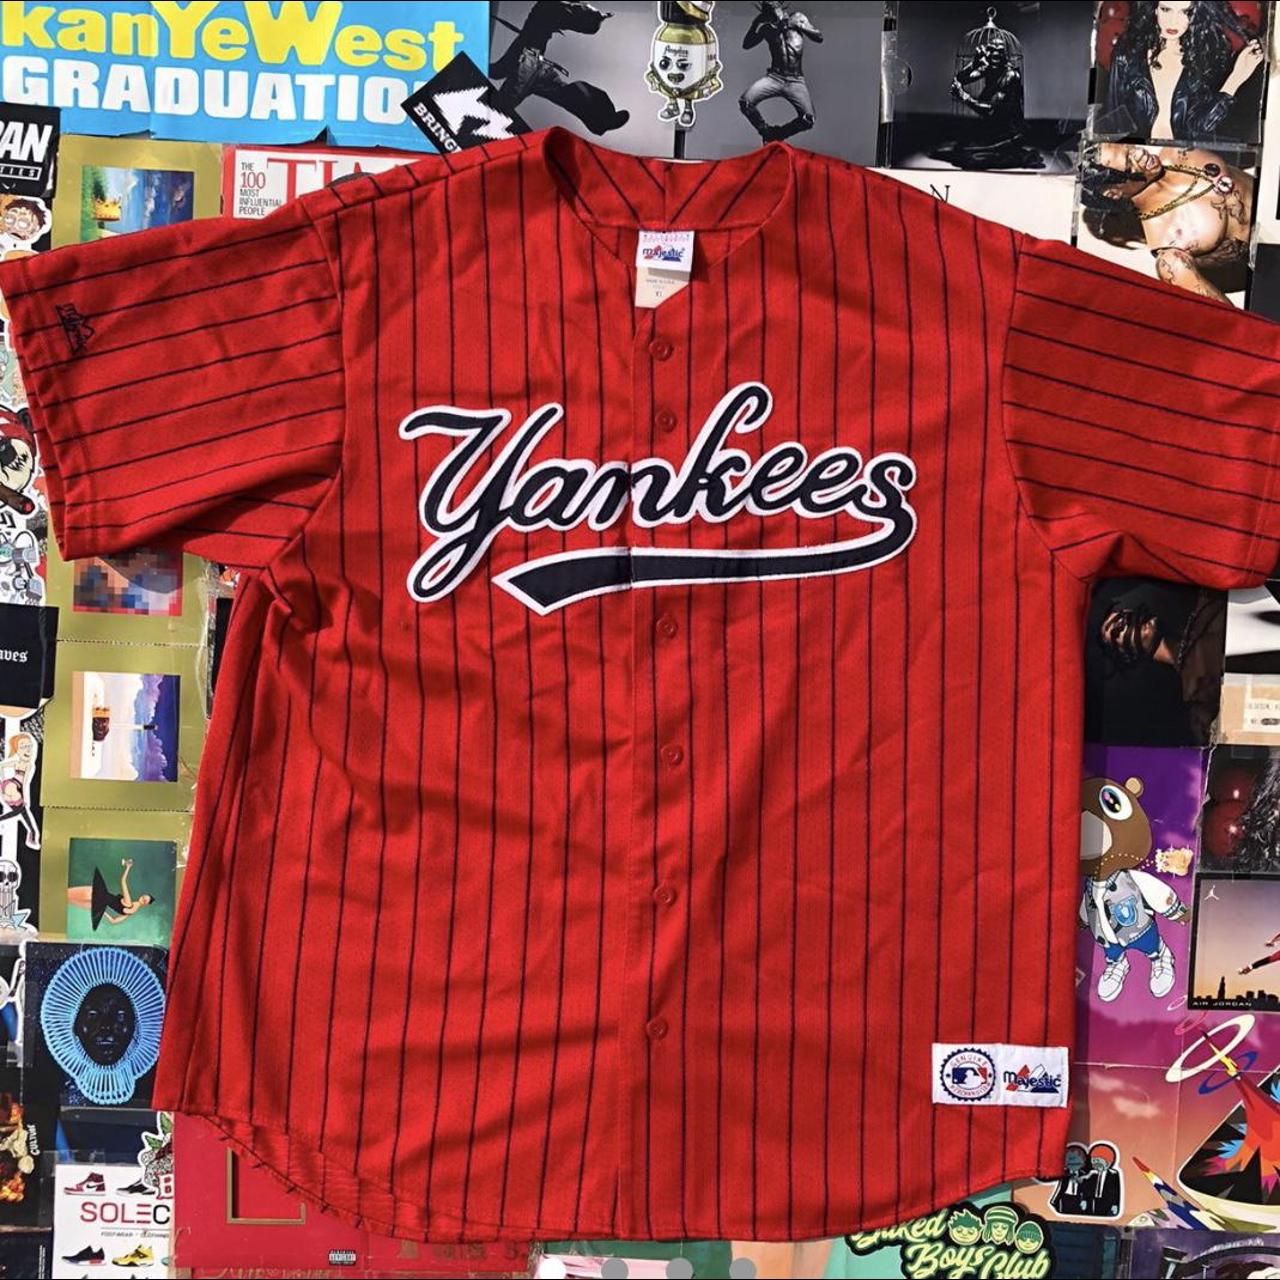 Vintage NY Yankee Jersey - Depop